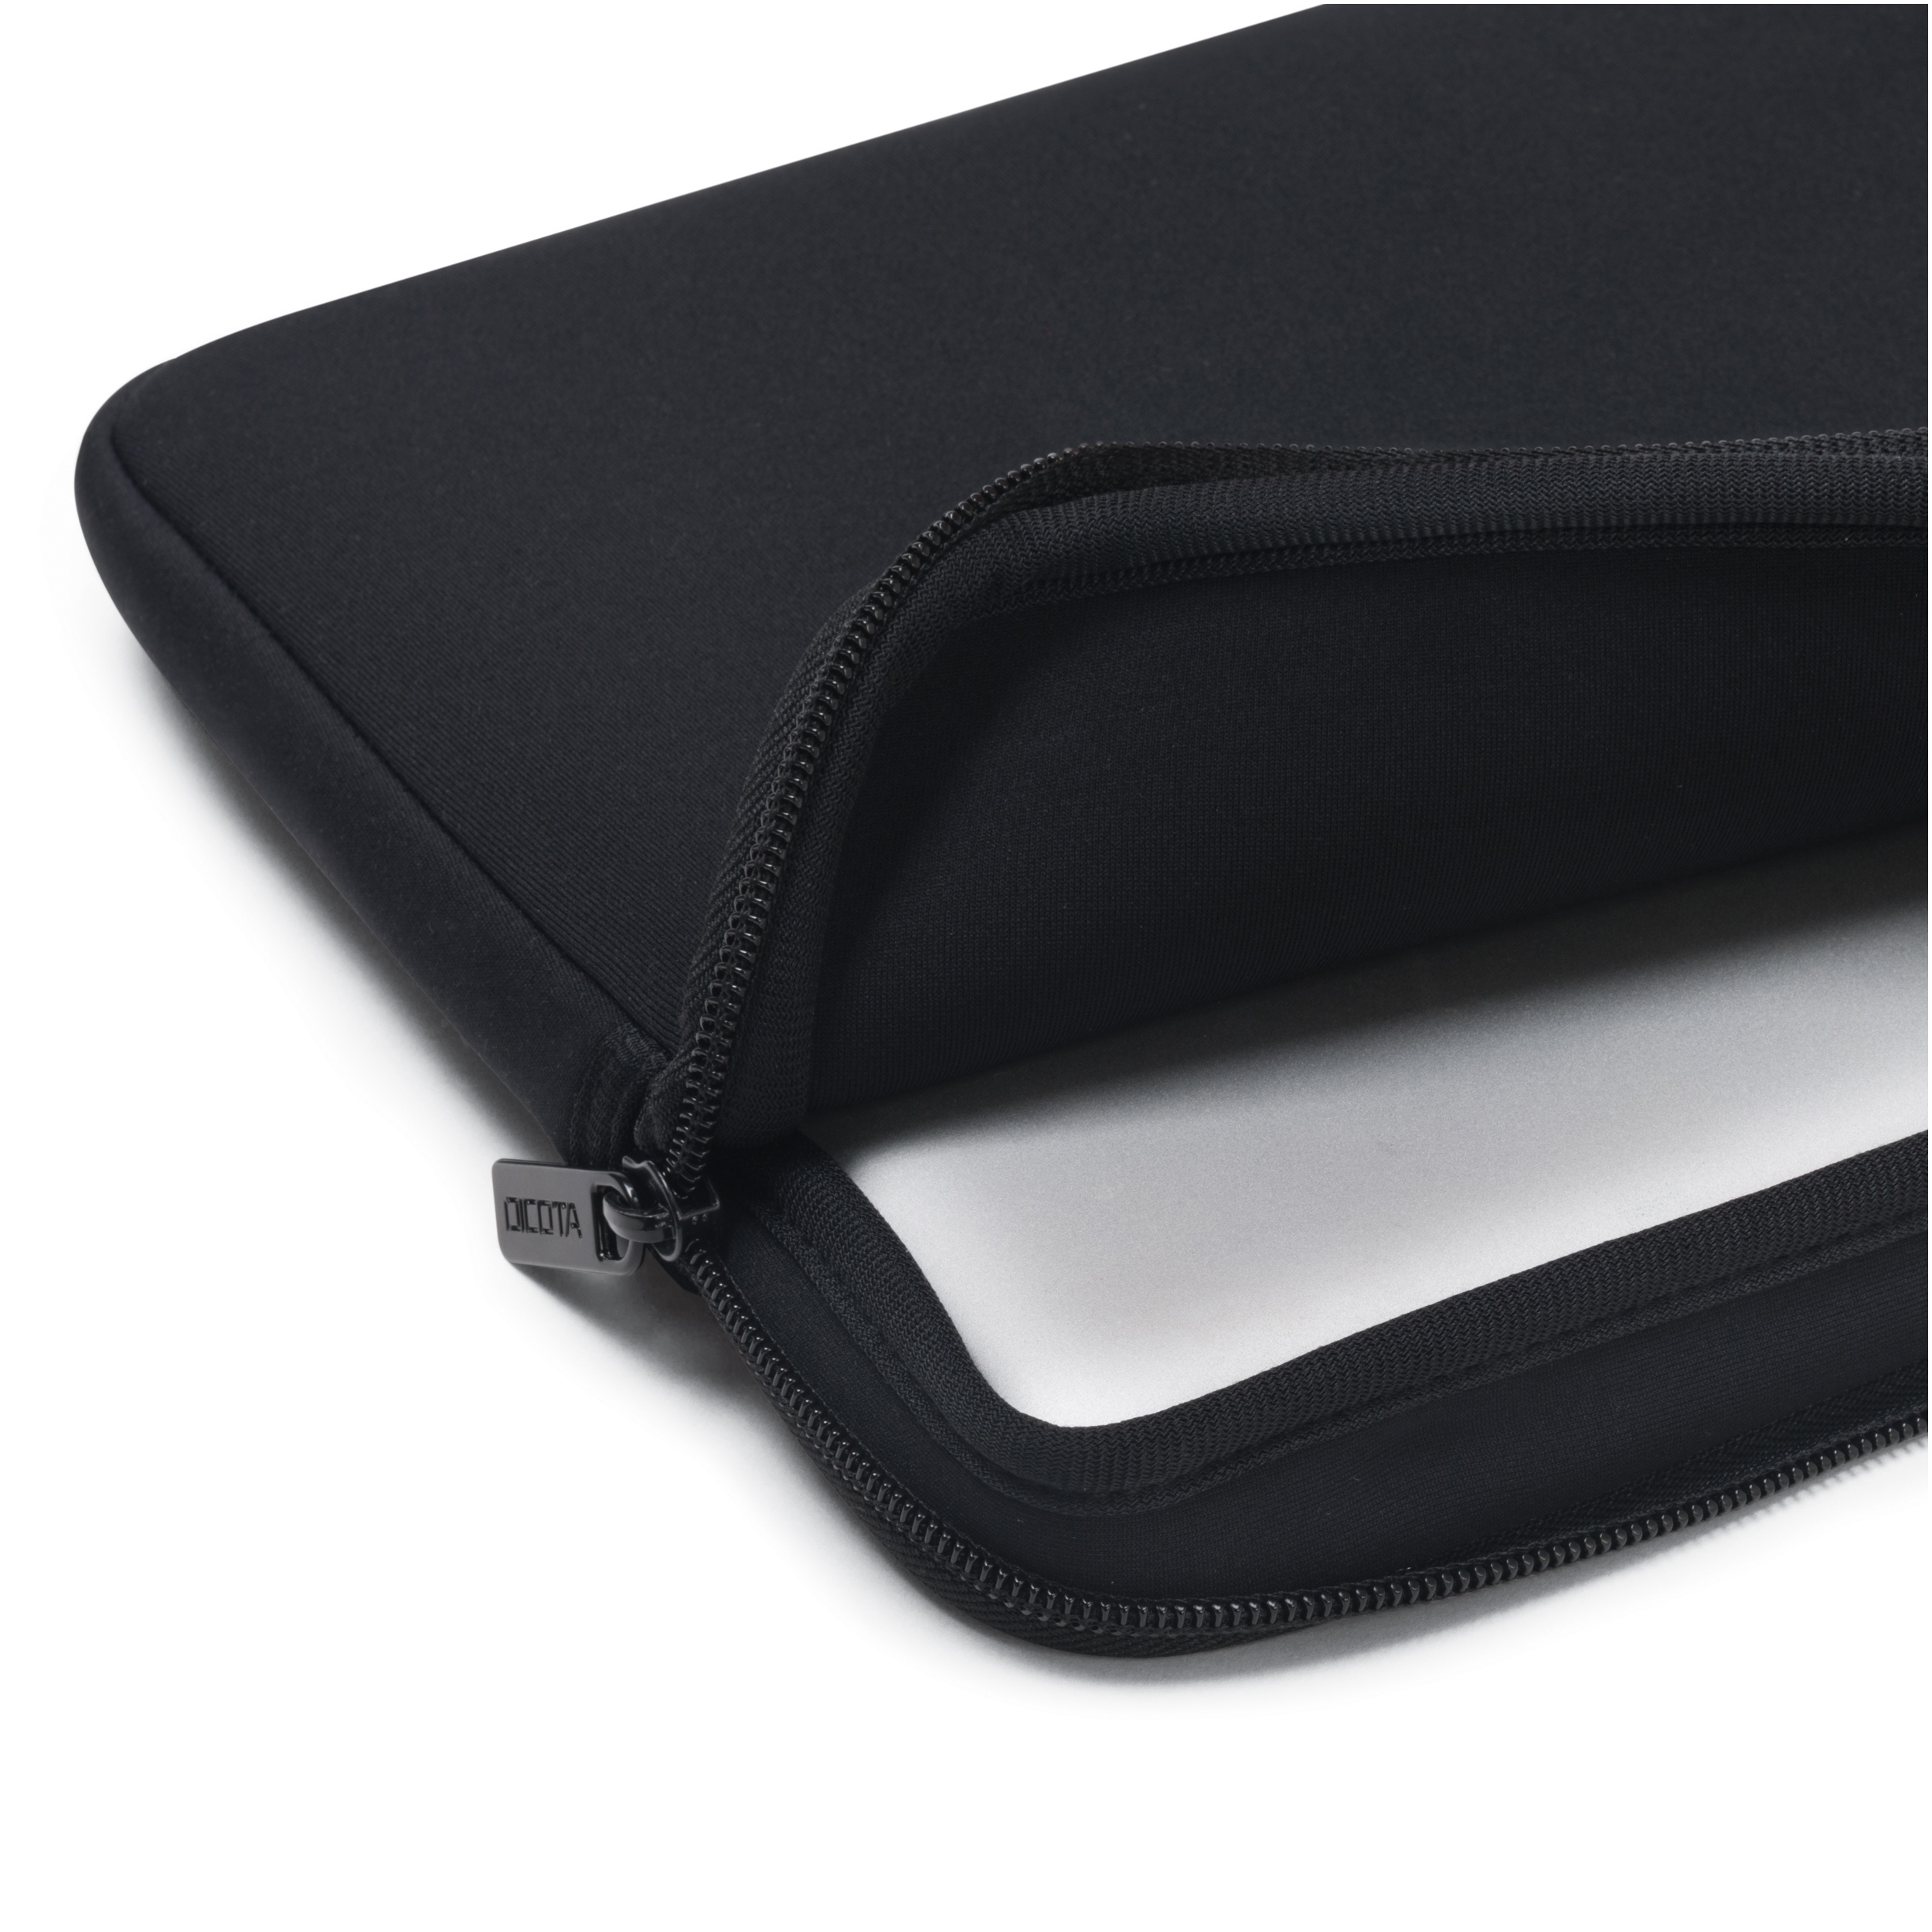 DICOTA Perfect Skin Notebooktasche Sleeve Schwarz für Neopren, Universal